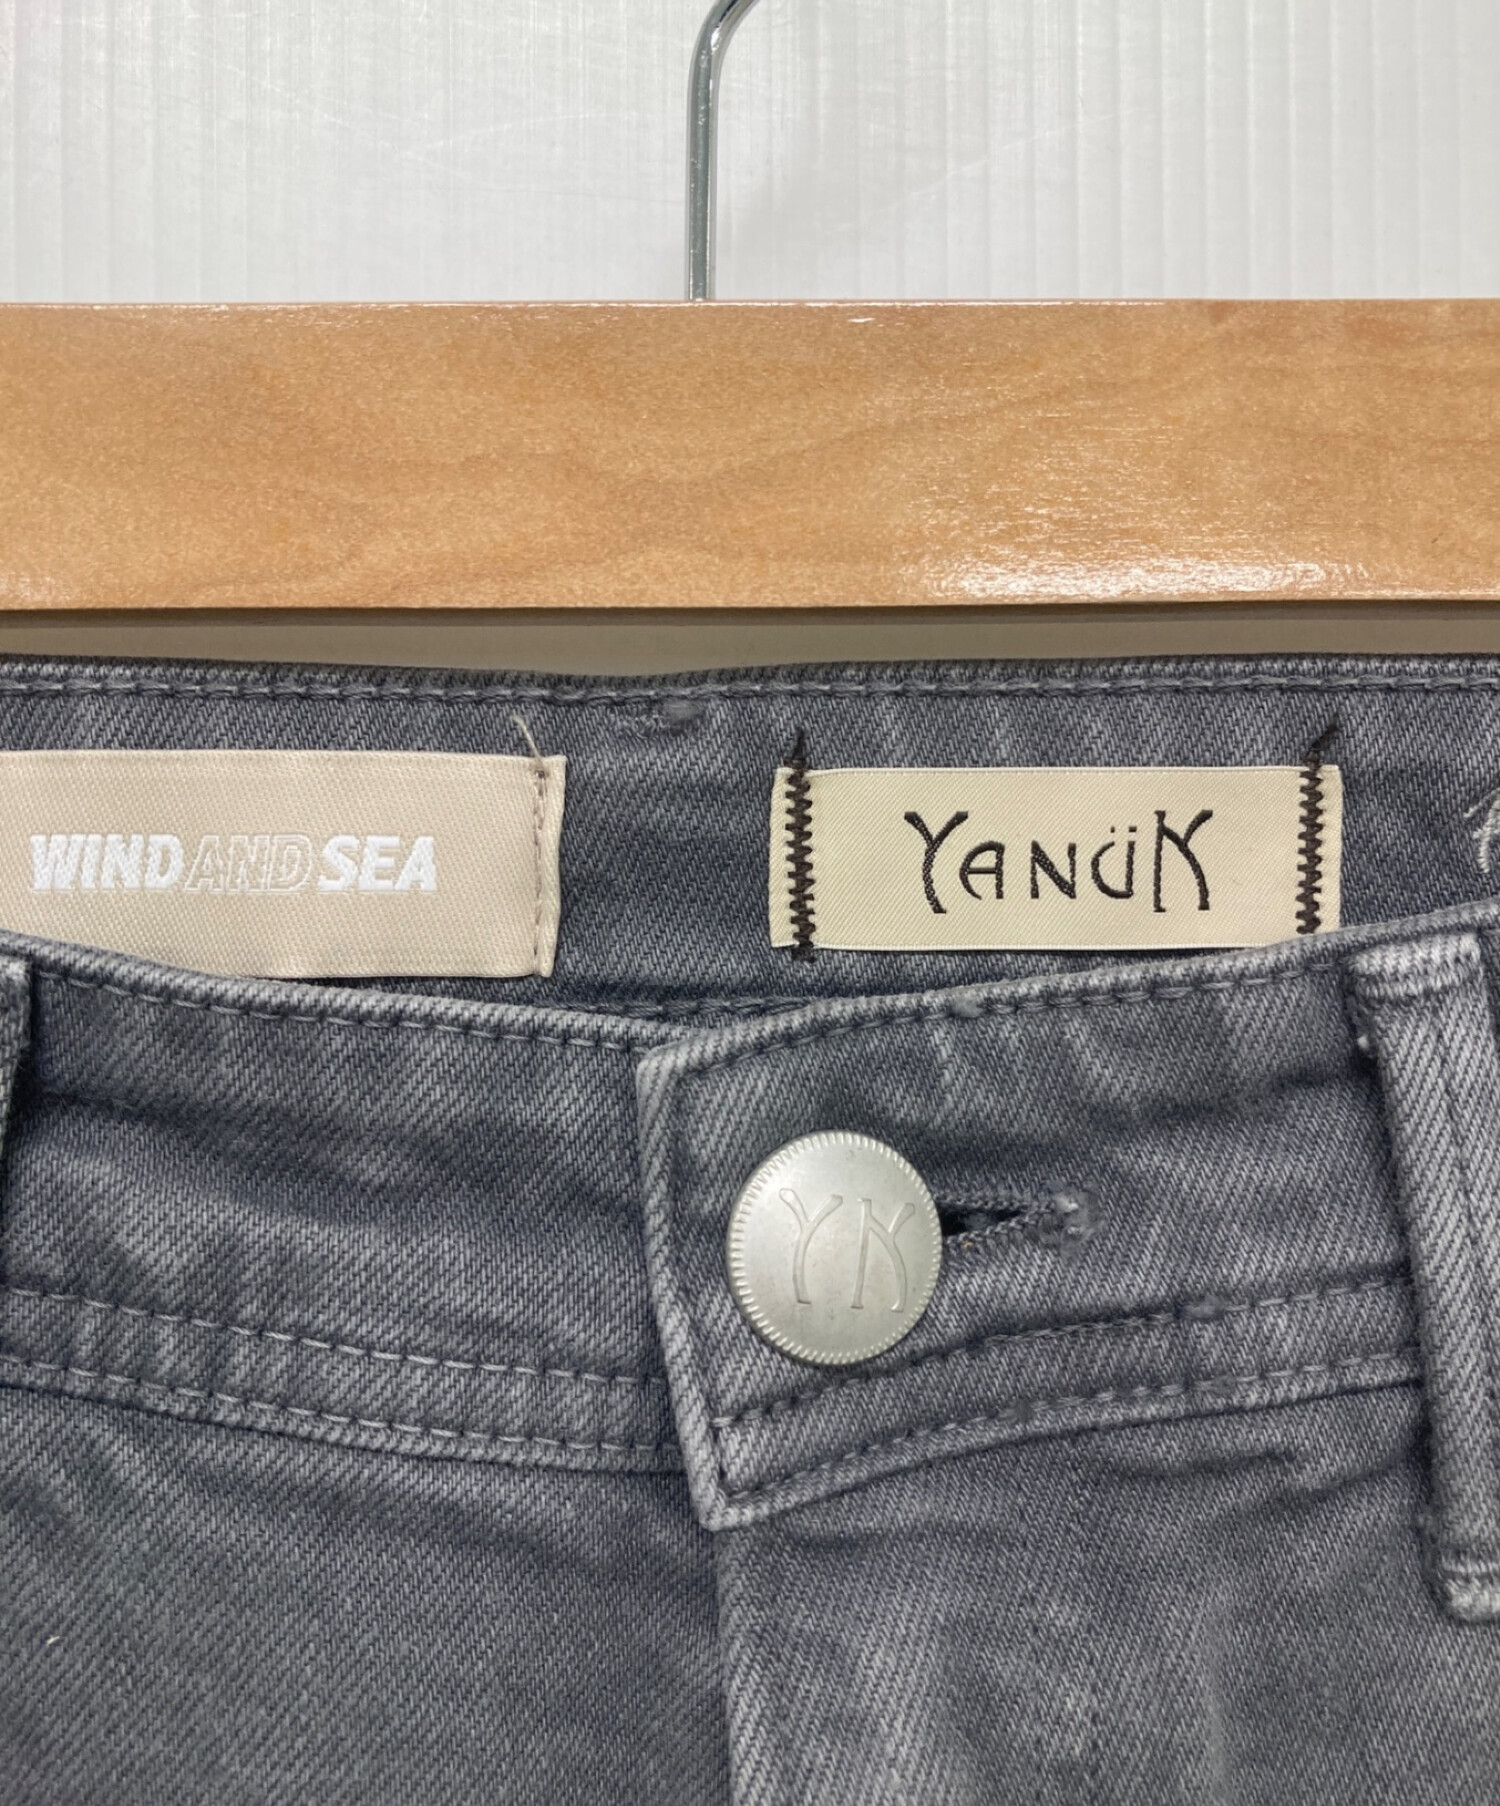 中古・古着通販】YANUK (ヤヌーク) WIND AND SEA (ウィンダンシー